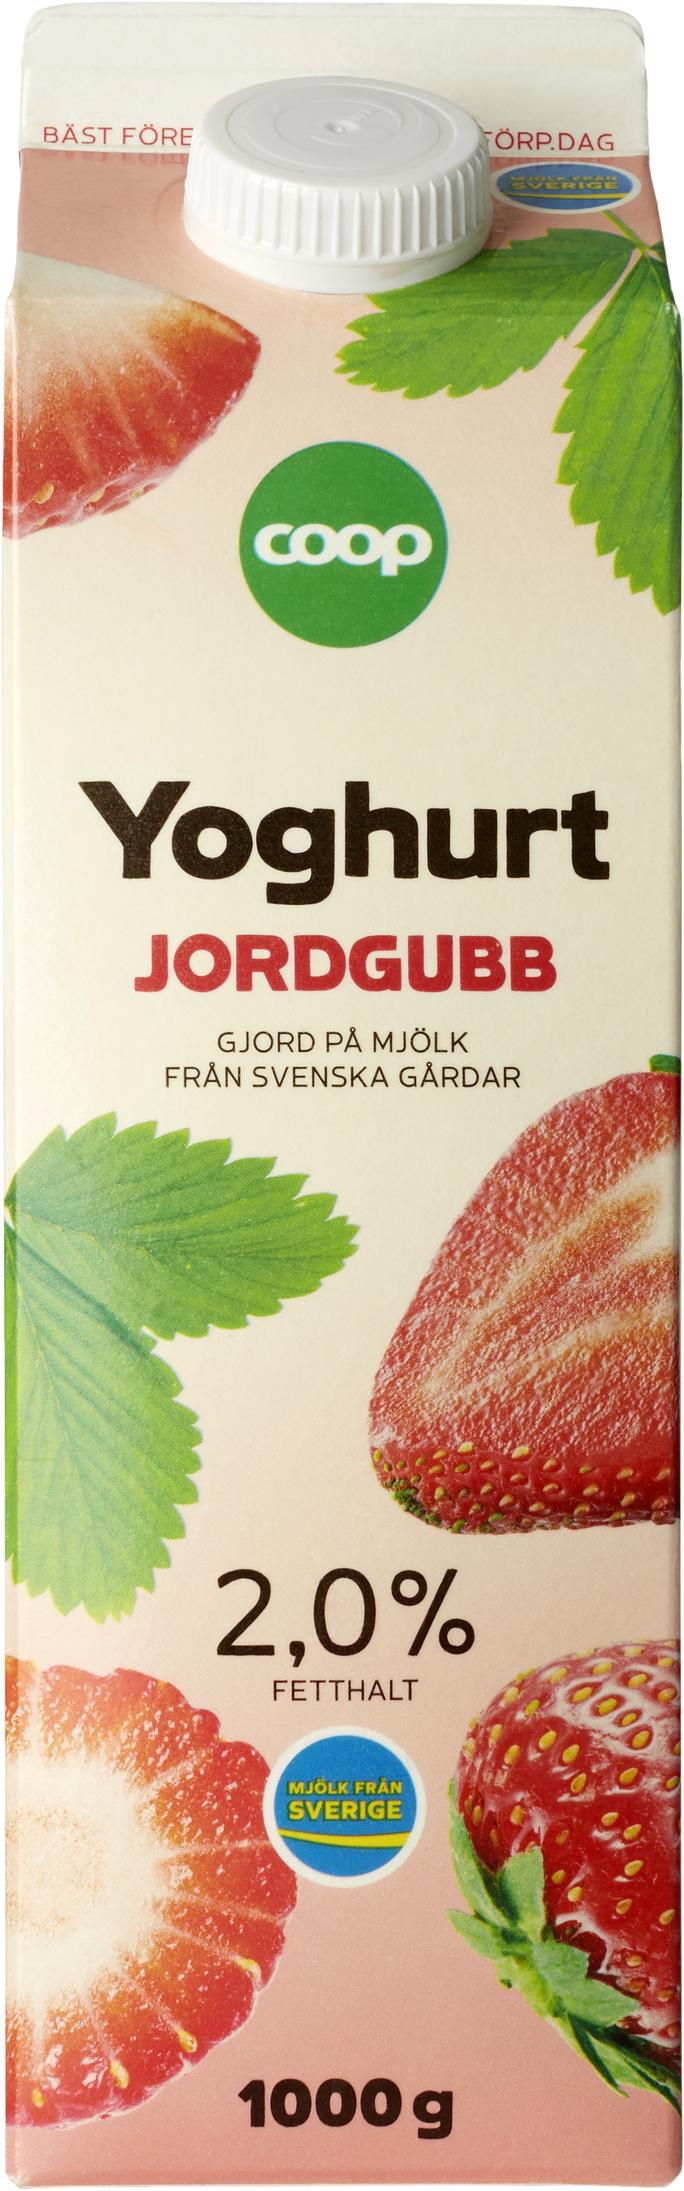 Yoghurt Jordgubb för 23,5 kr på Coop